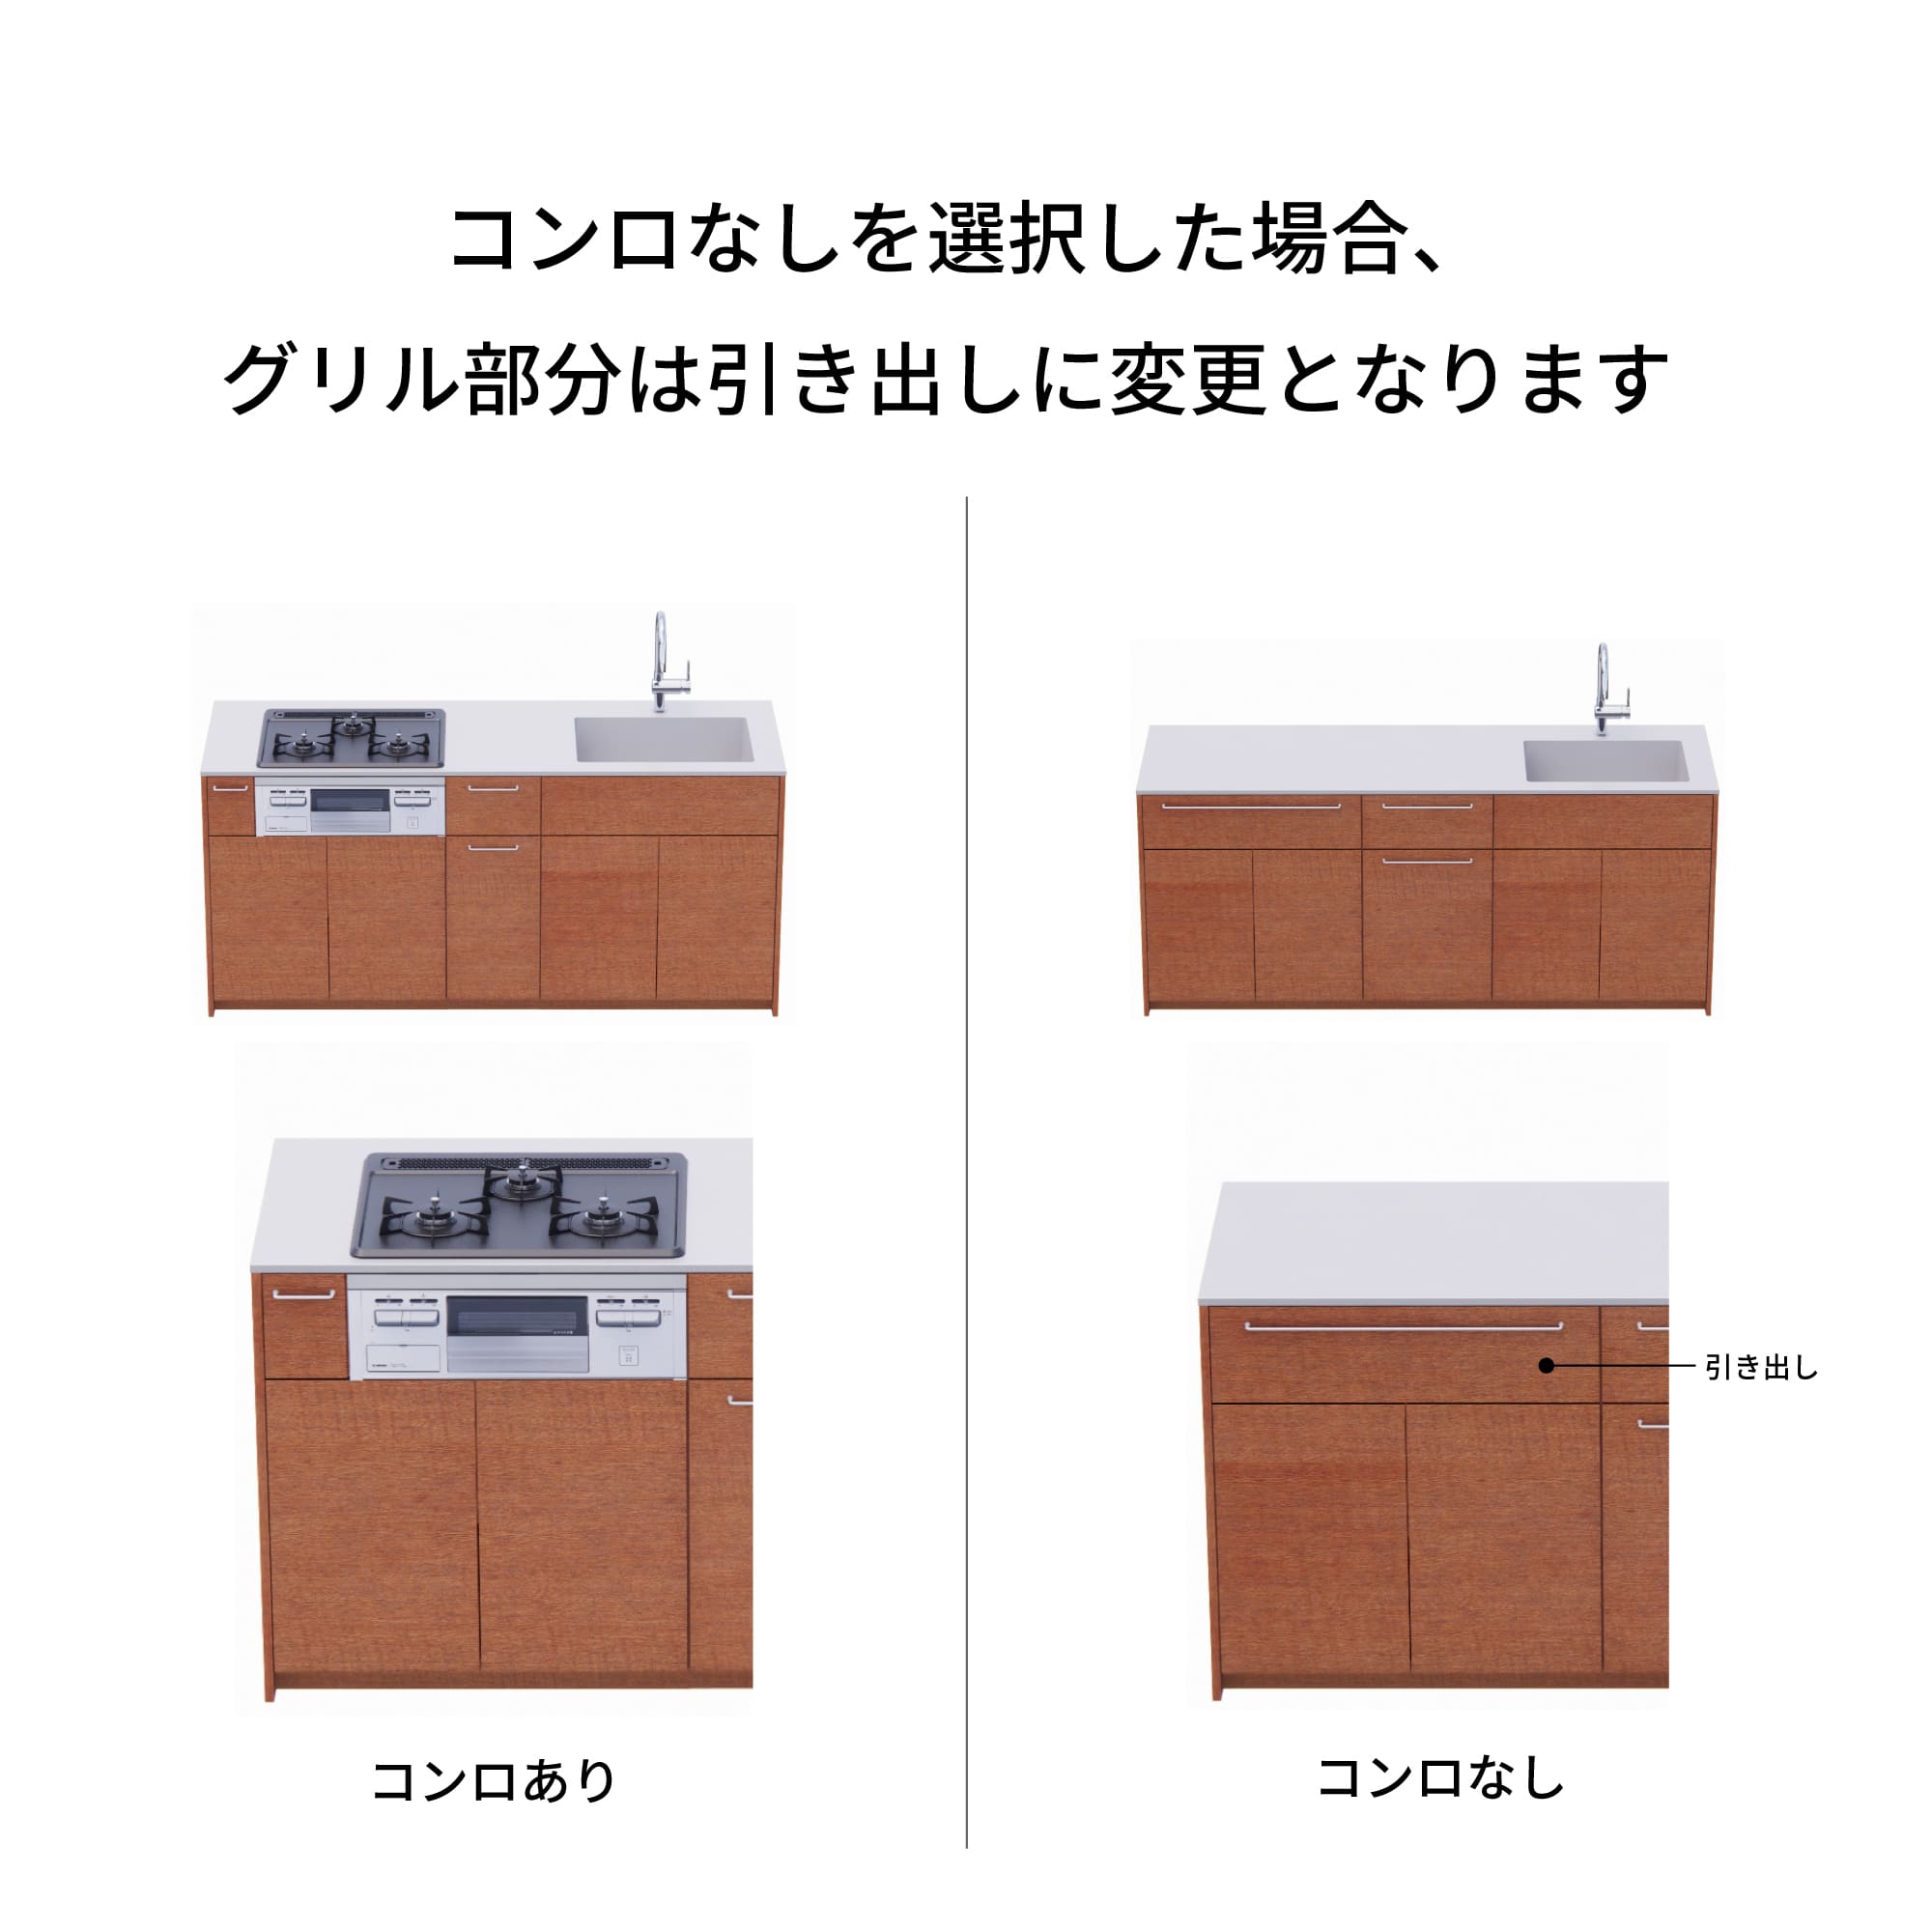 木製システムキッチン 対面型 W1990・コンロなし / オーブンなし / 食洗機あり KB-KC022-34-G183 コンロ無しの場合、通常魚焼きグリルがある部分は引き出しになっています